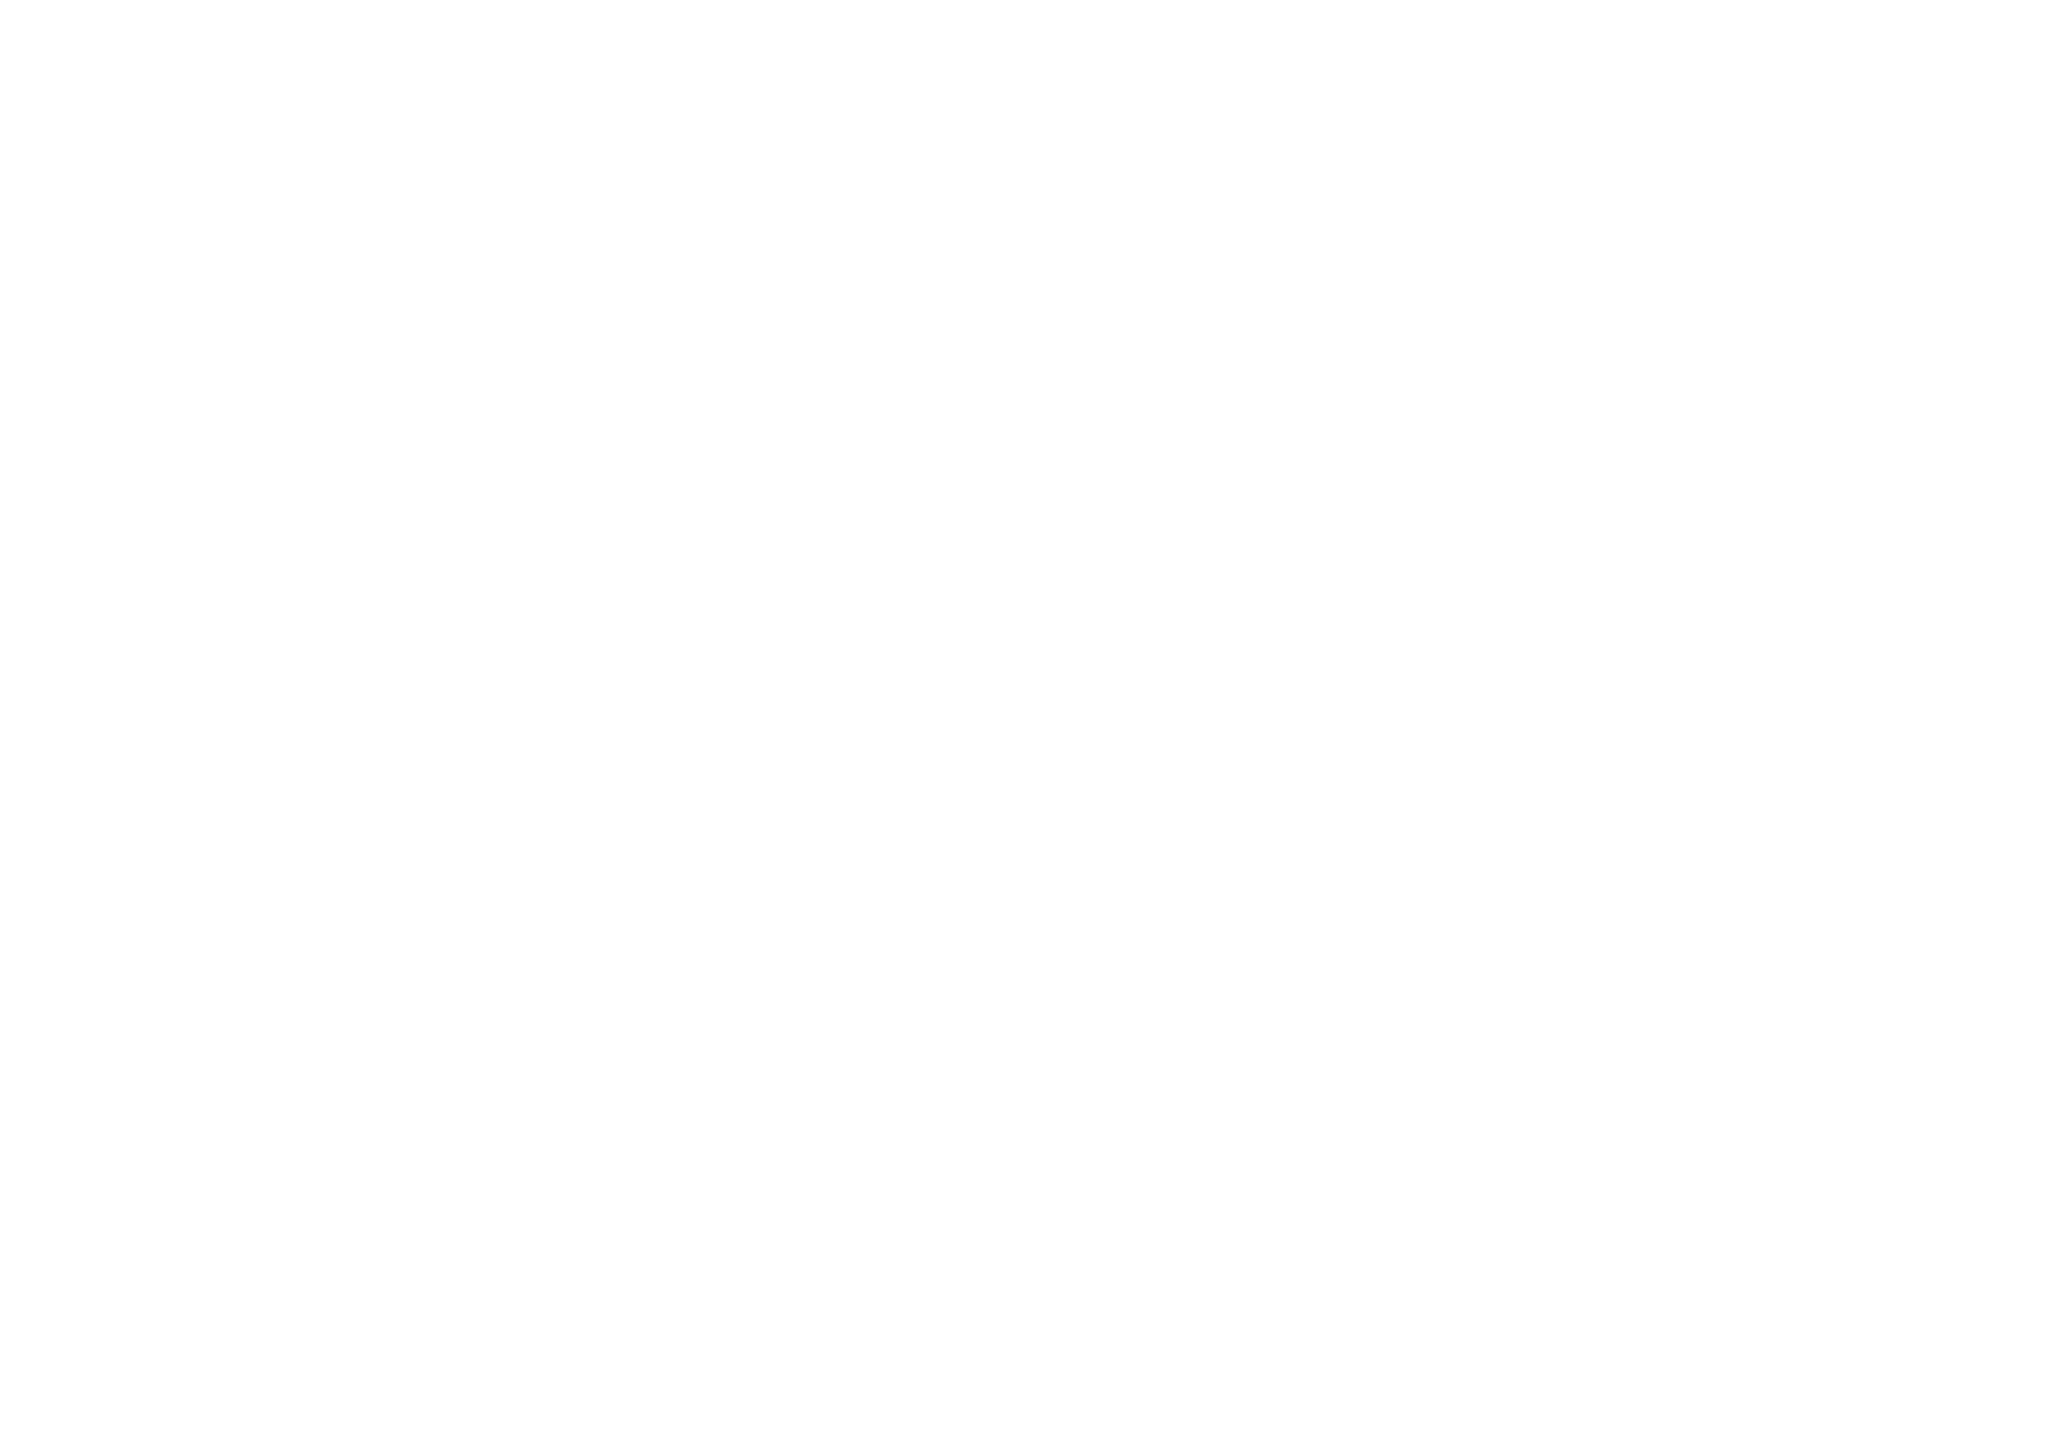 J.P.MORGAN